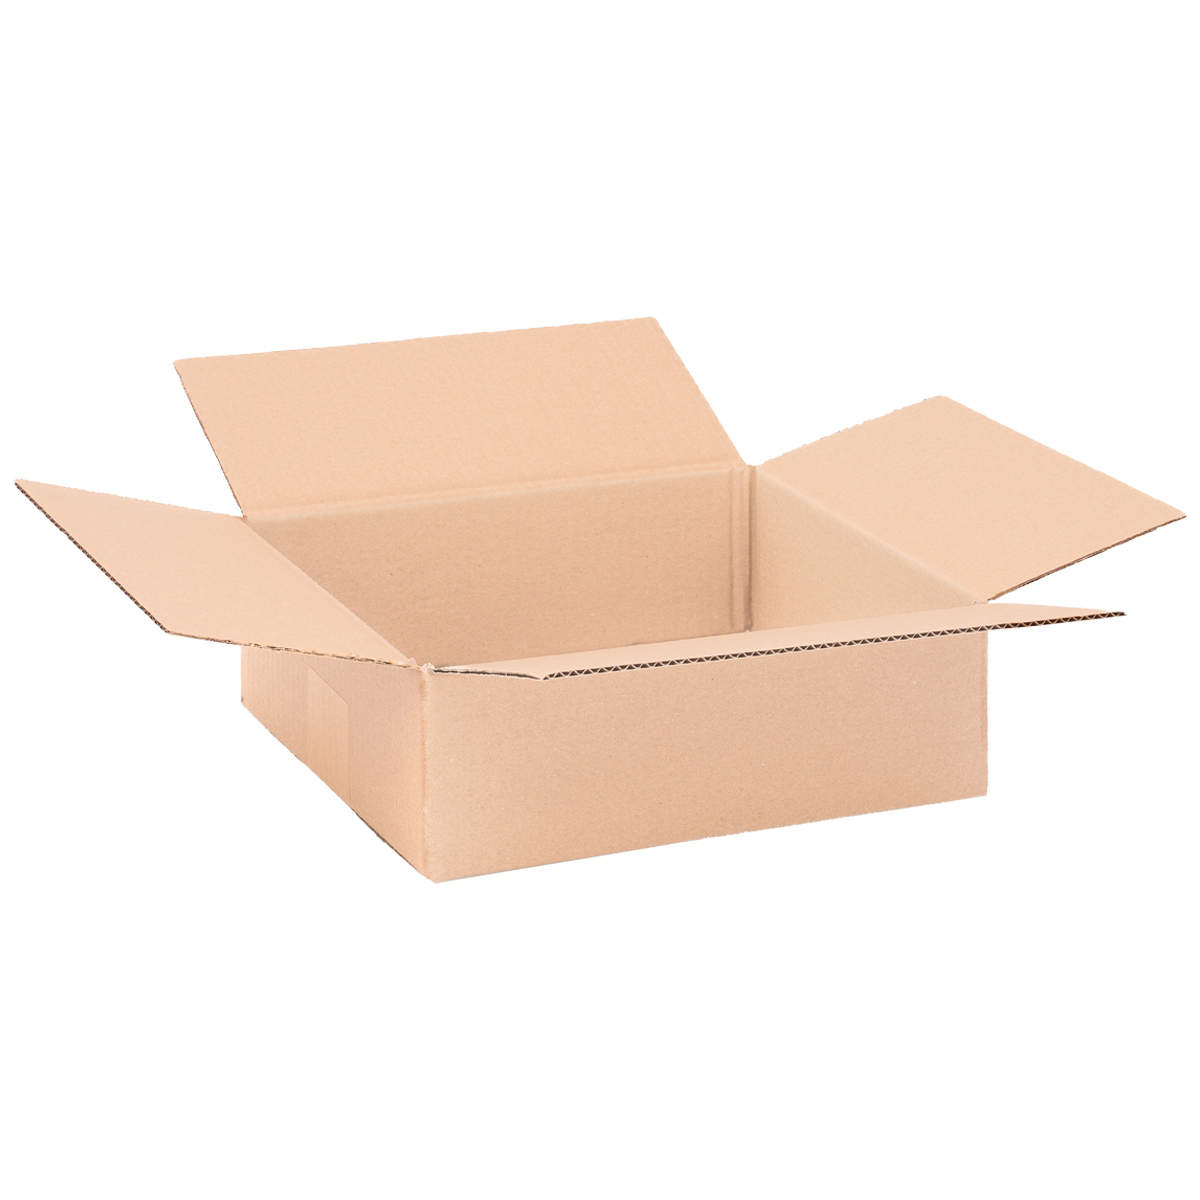 Cardboard box, single wall, 280x220x95 mm - KK 29